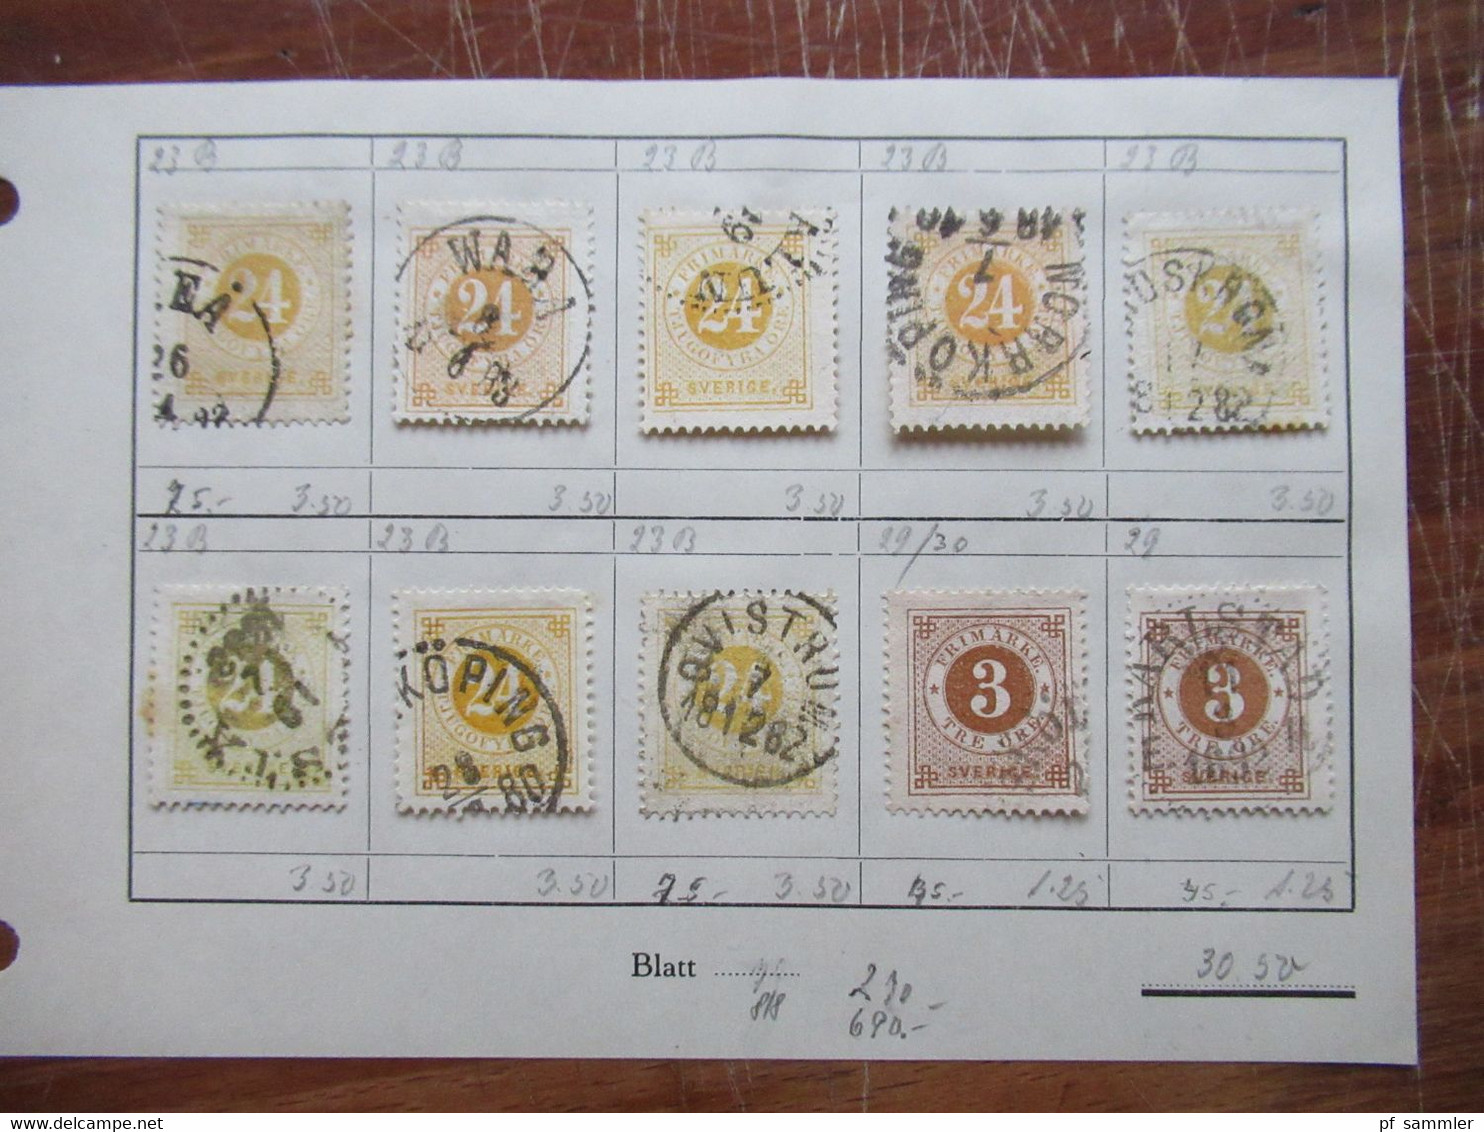 Schweden Klassik 1855 - 1874 viele gestempelte Marken auf Auswahlseiten uraltes Auktionslos Edgar Mohrmann Hamburg